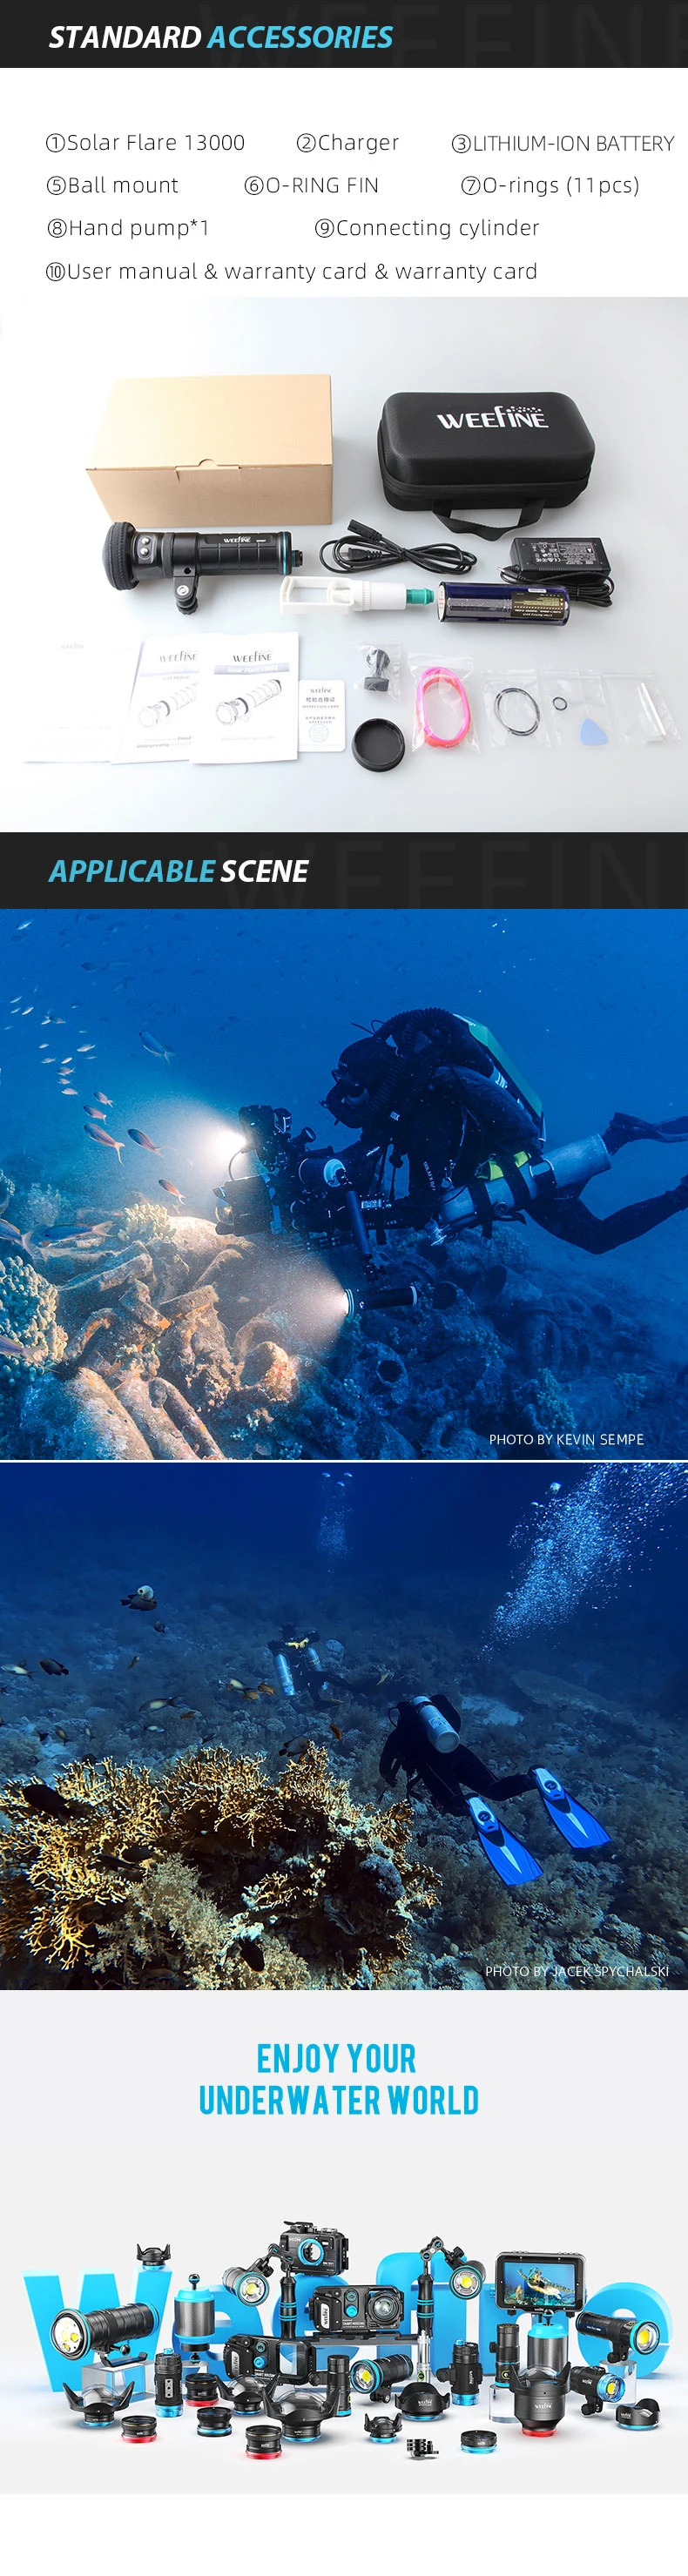 Weefine Brand Powerful Waterproof Underwater Submersible Diving Flashlight